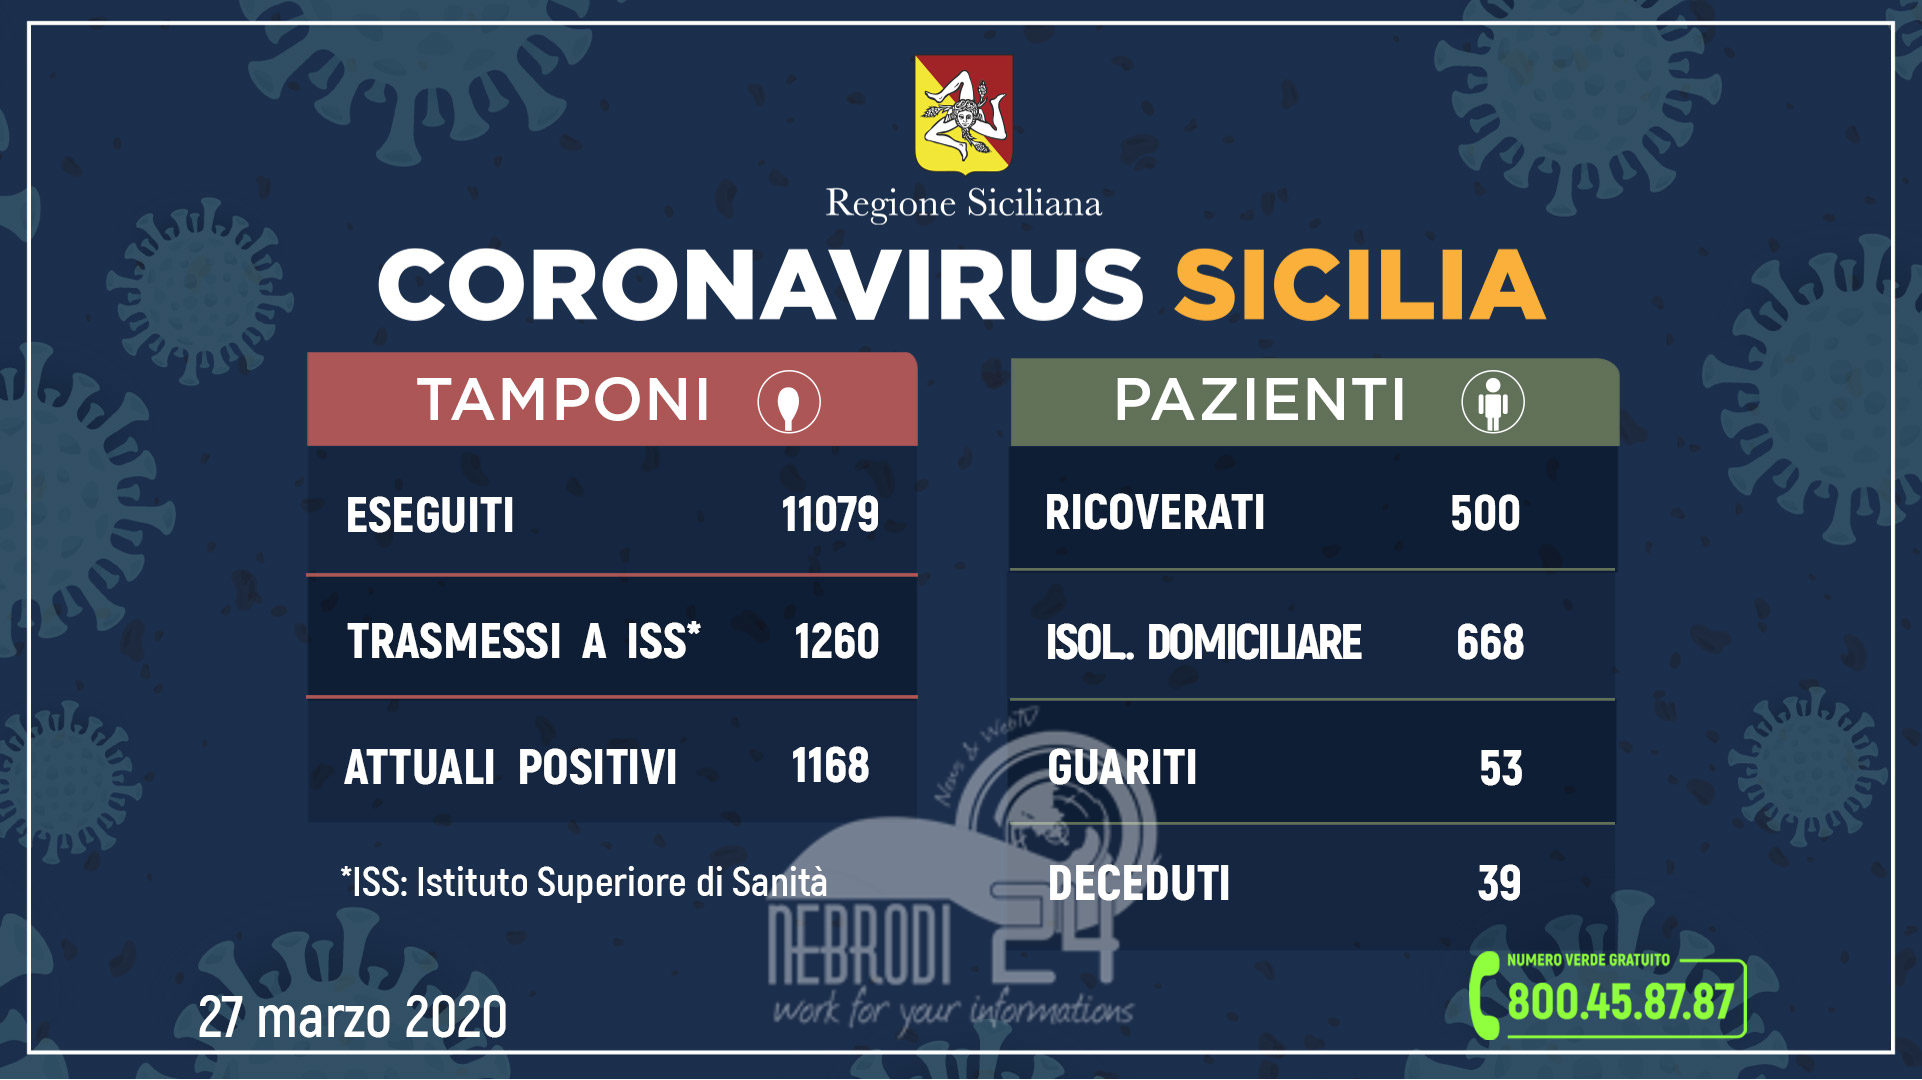 Coronavirus: l’aggiornamento in Sicilia, 1.168 attuali positivi, + 73 rispetto a ieri, (trasmessi a ISS 1260) e 53 guariti